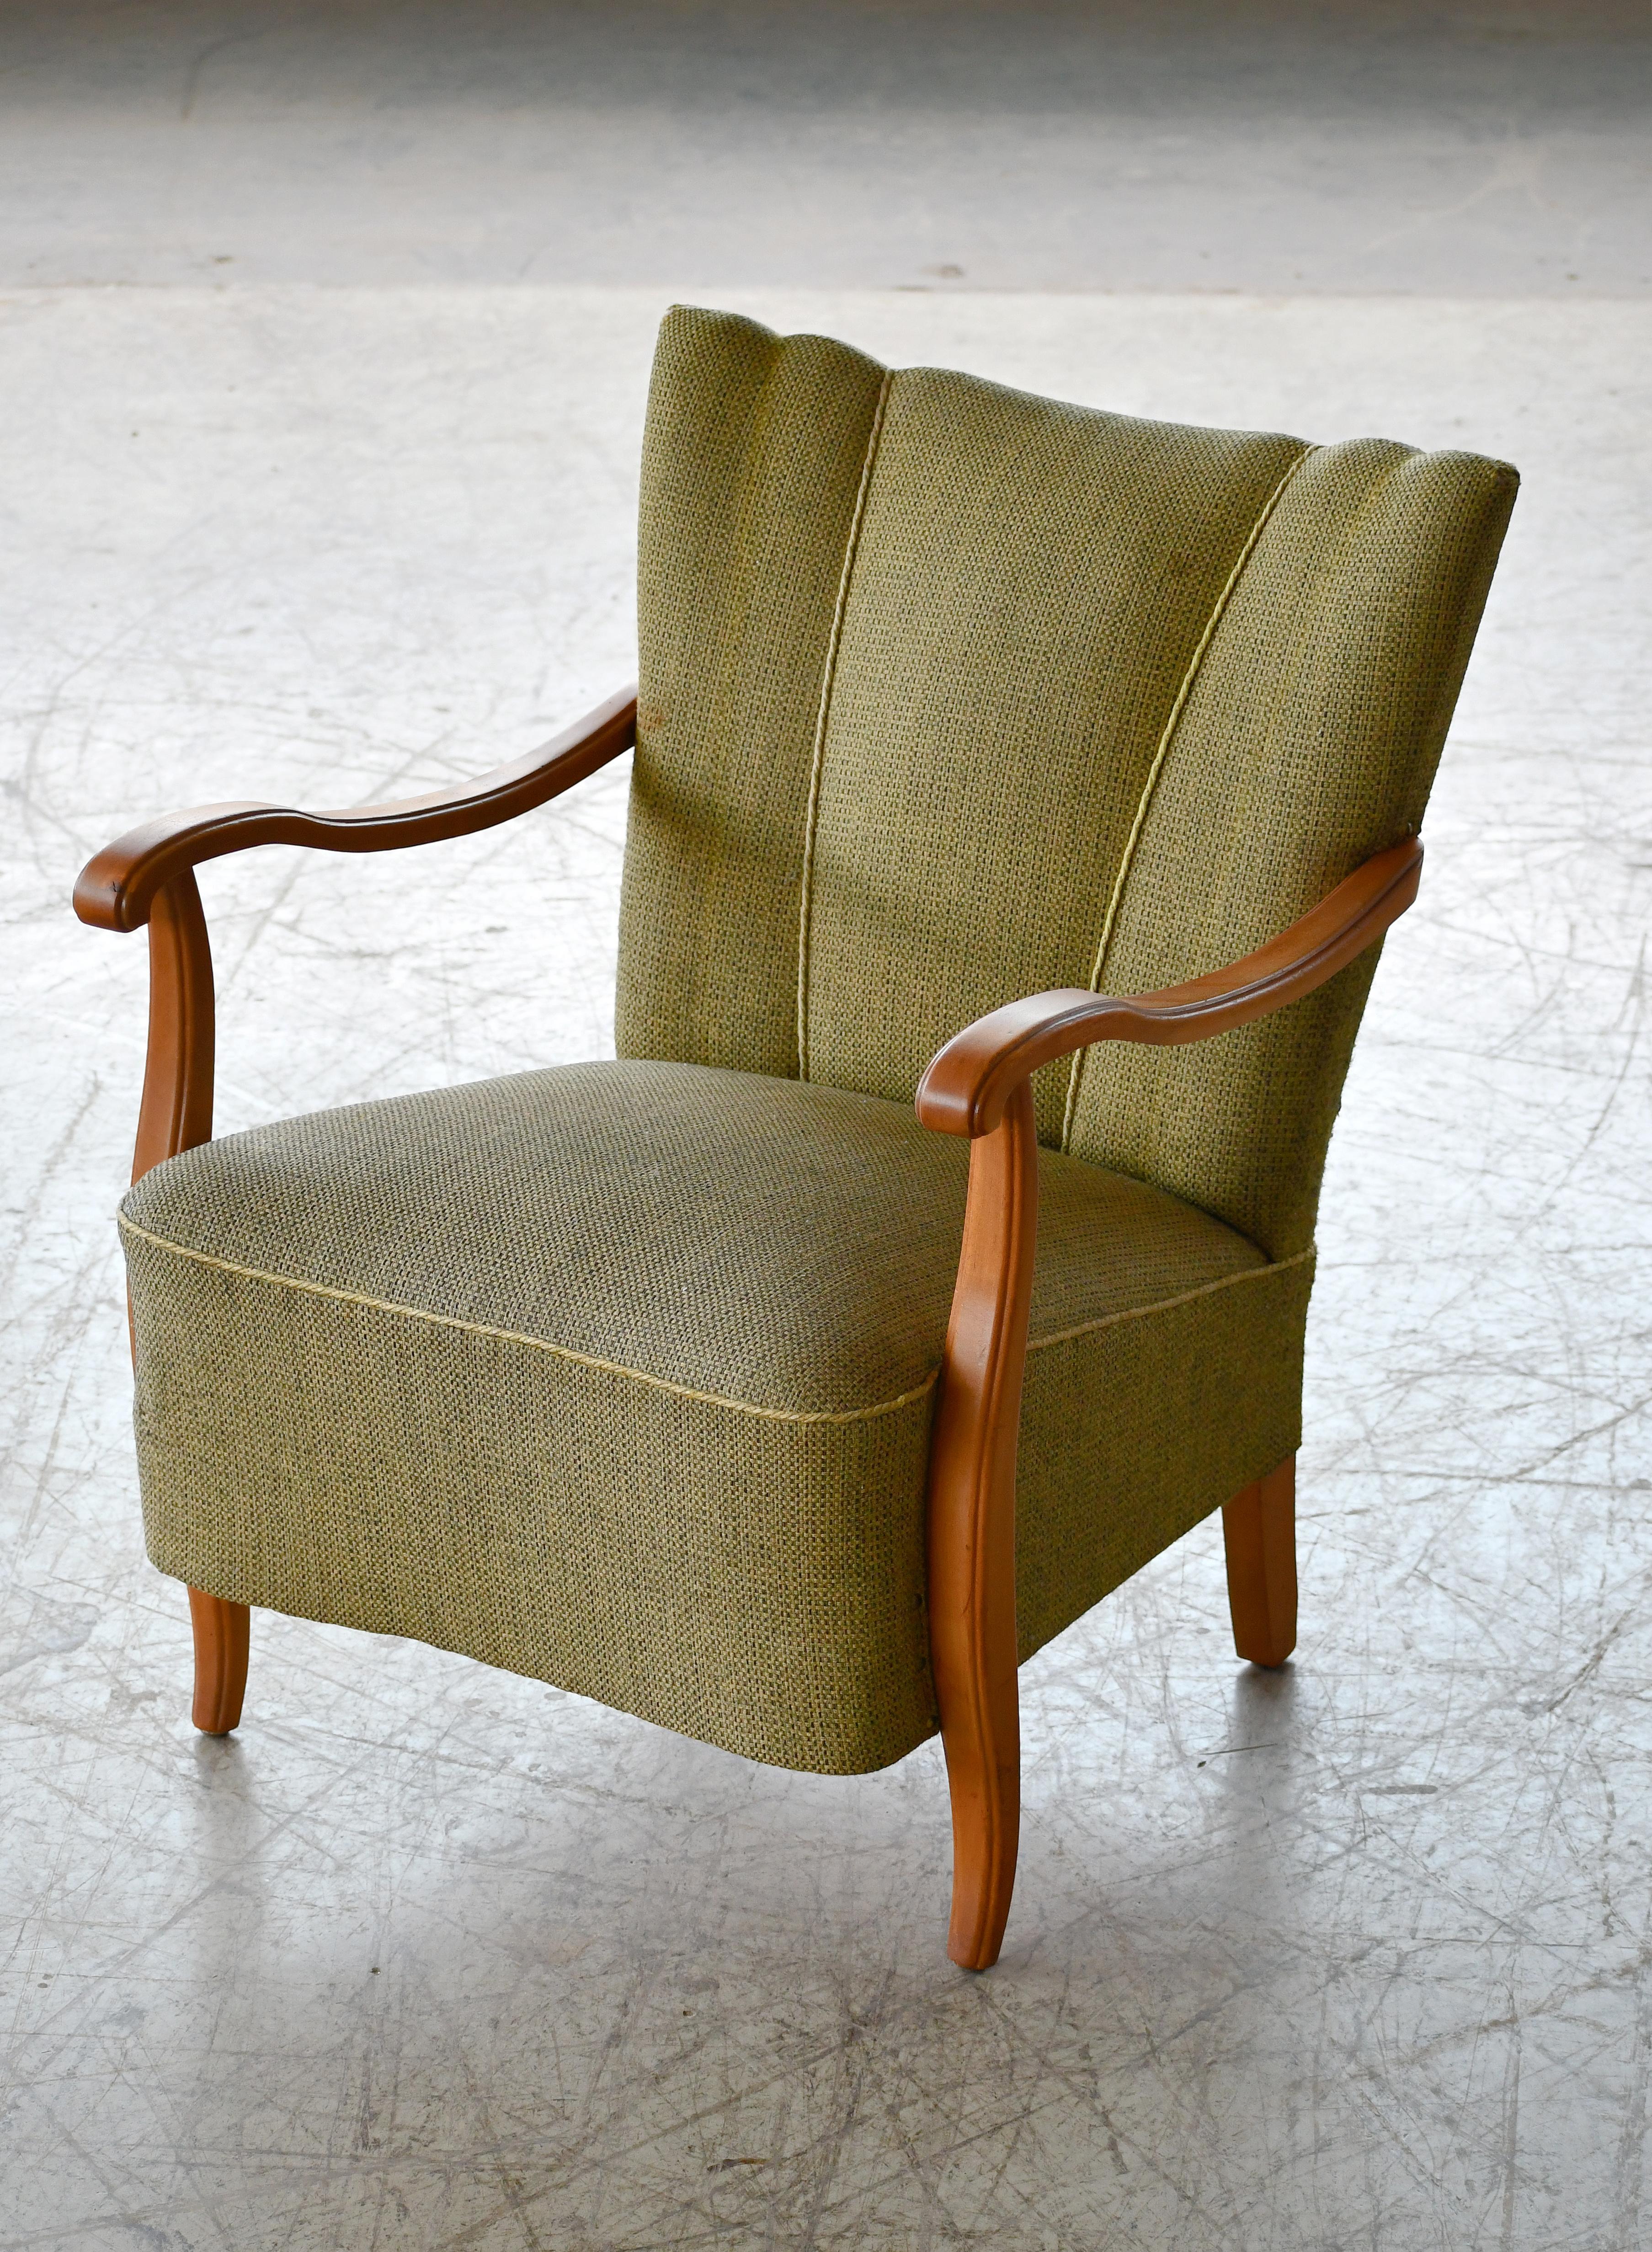 Charmanter Sessel mit offenen Armlehnen im Stil von Fritz Hansen aus den 1940er Jahren. Diese Art von Stühlen aus den 1940er Jahren kommen immer mehr in Mode. Hergestellt aus massivem Ahornholz mit schön geformten/geschnitzten Armlehnen und